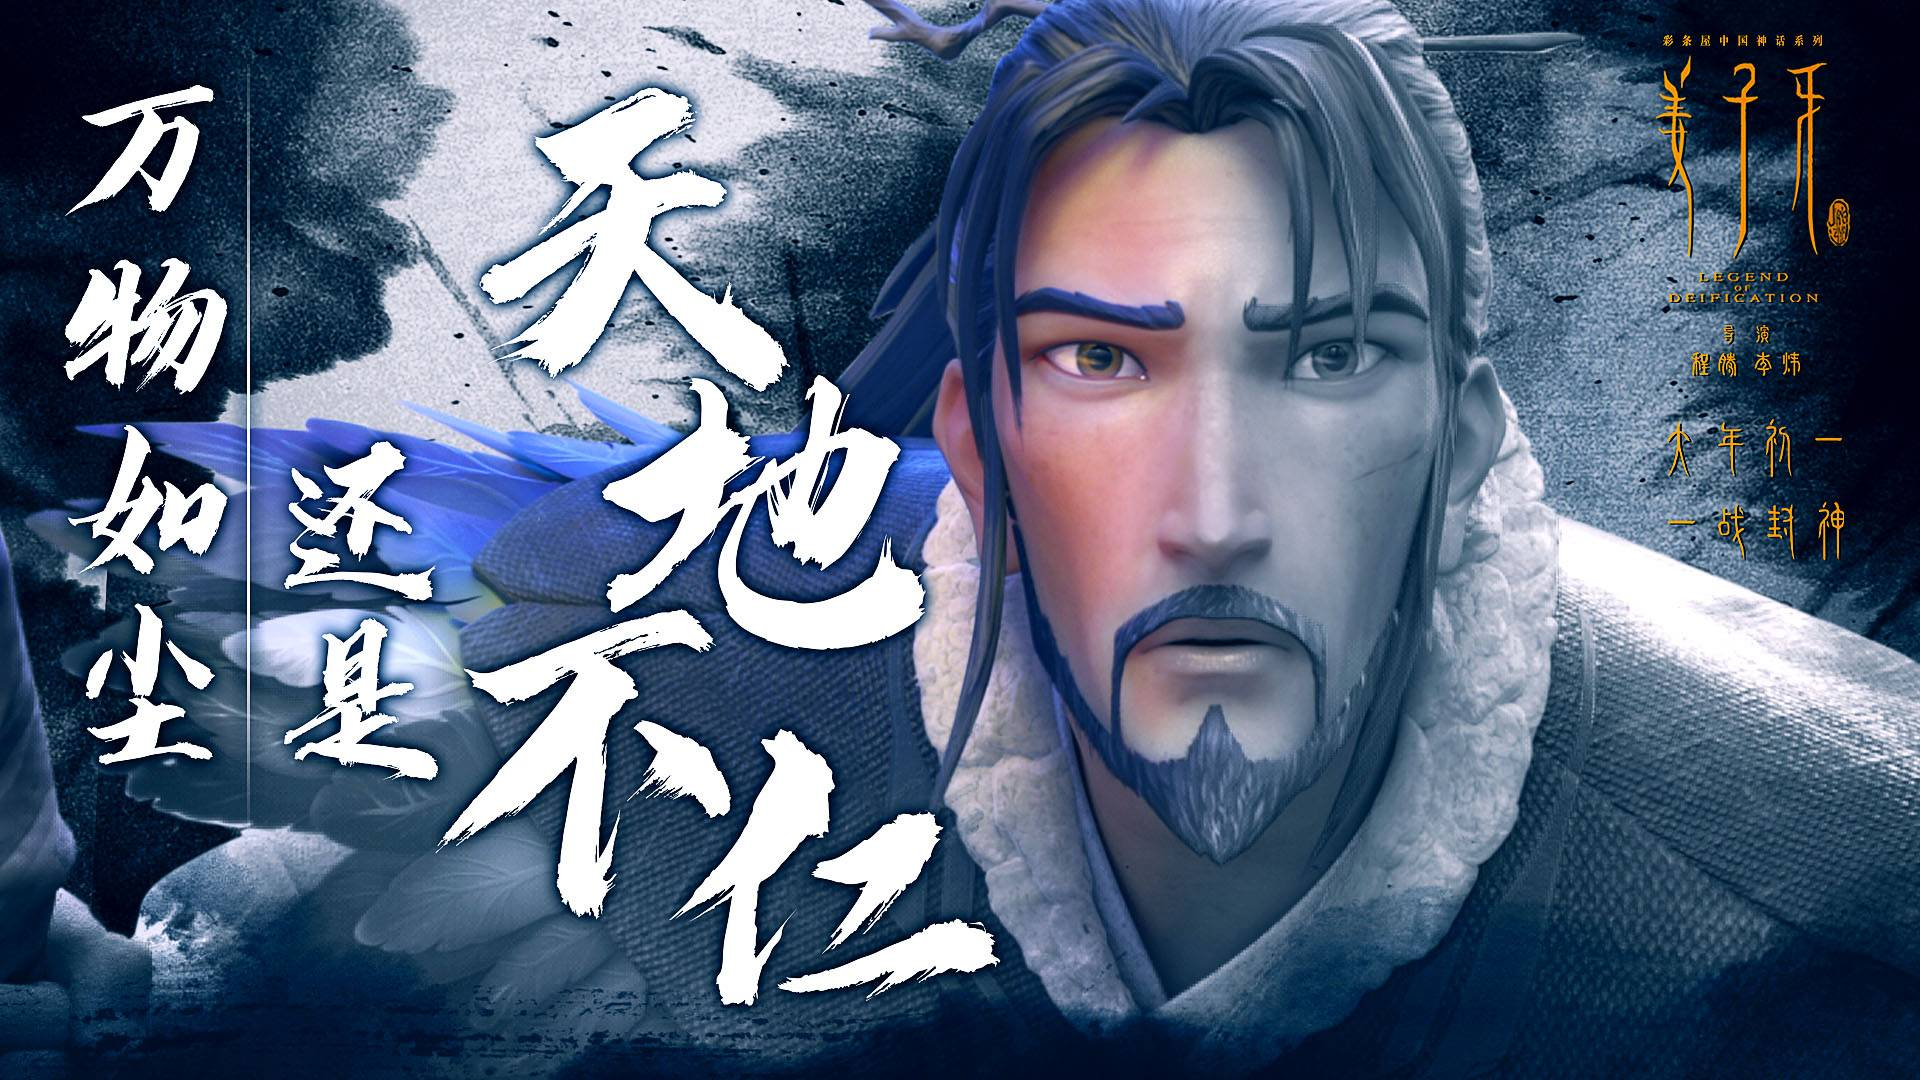 中国神话系列《姜子牙》终极预告片,高清1080p